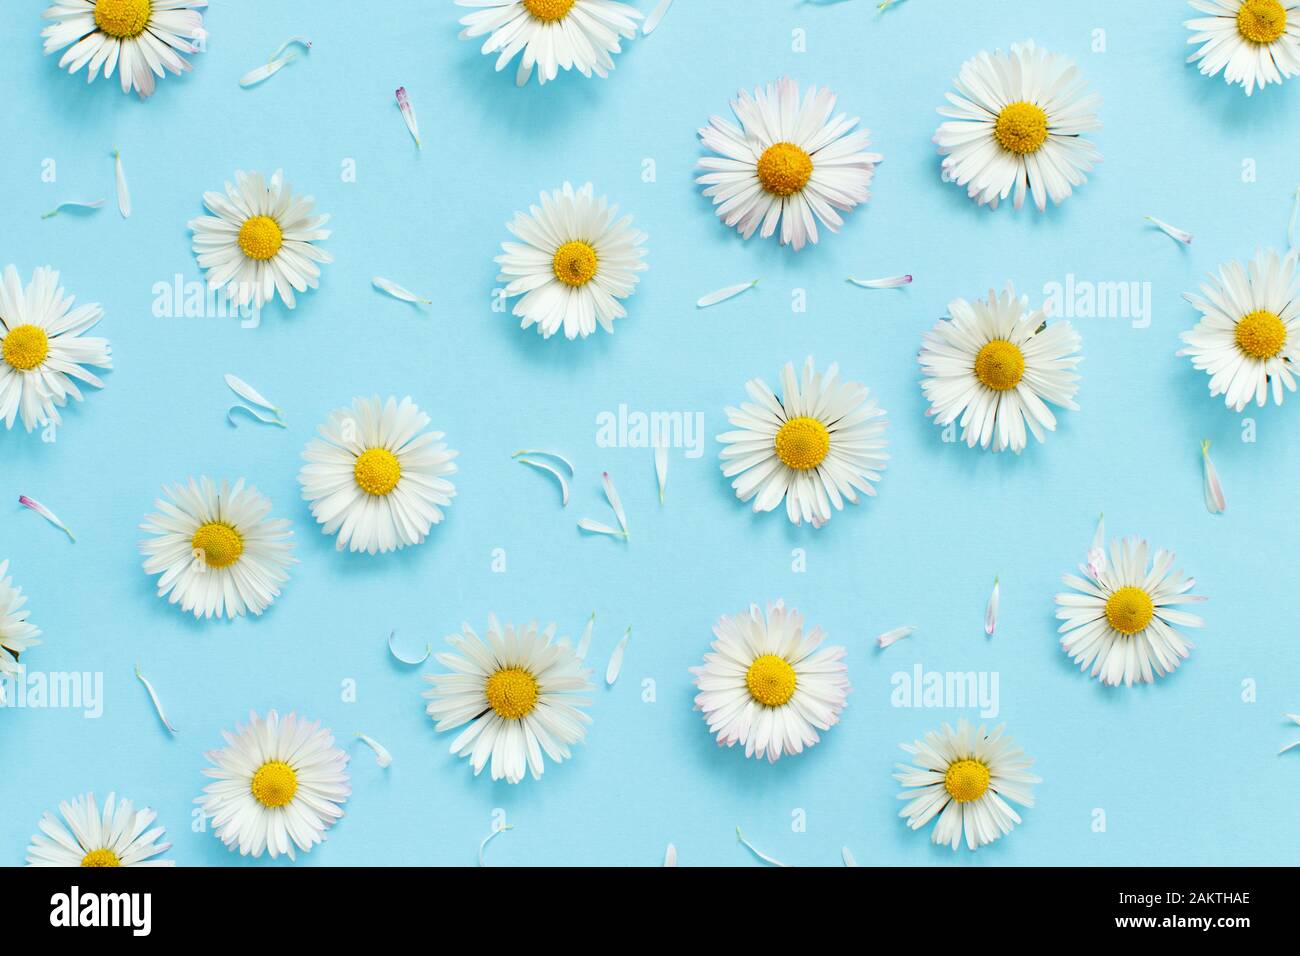 Weiße Gänseblümchen auf hellblauem Hintergrund Draufsicht Stockfoto